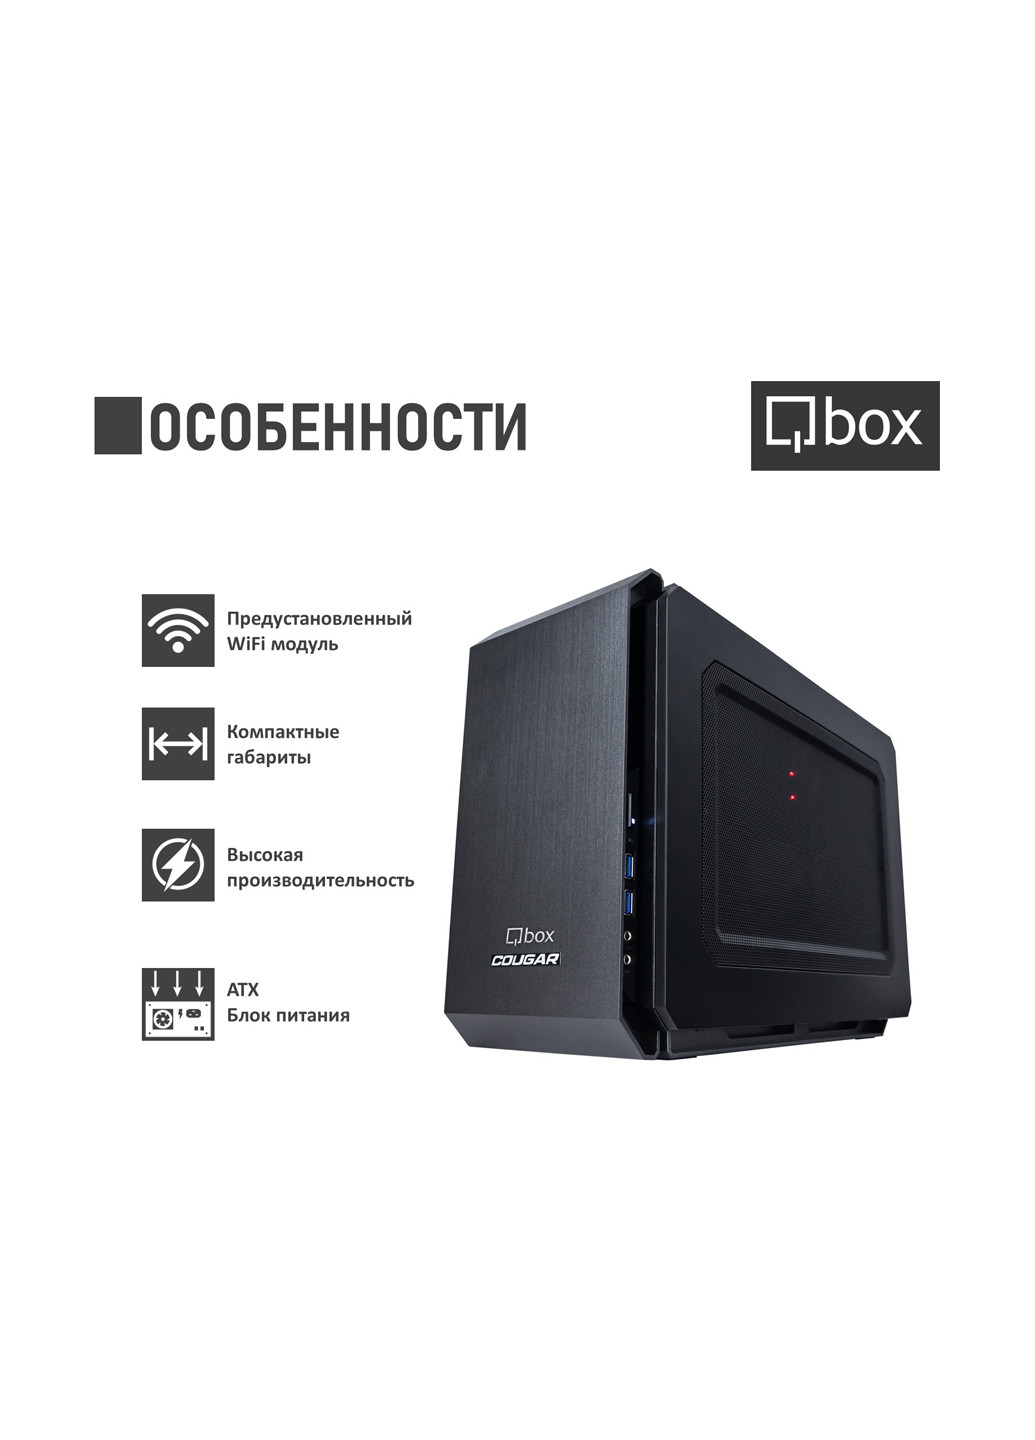 Компьютер I2608 Qbox qbox i2608 (131396722)